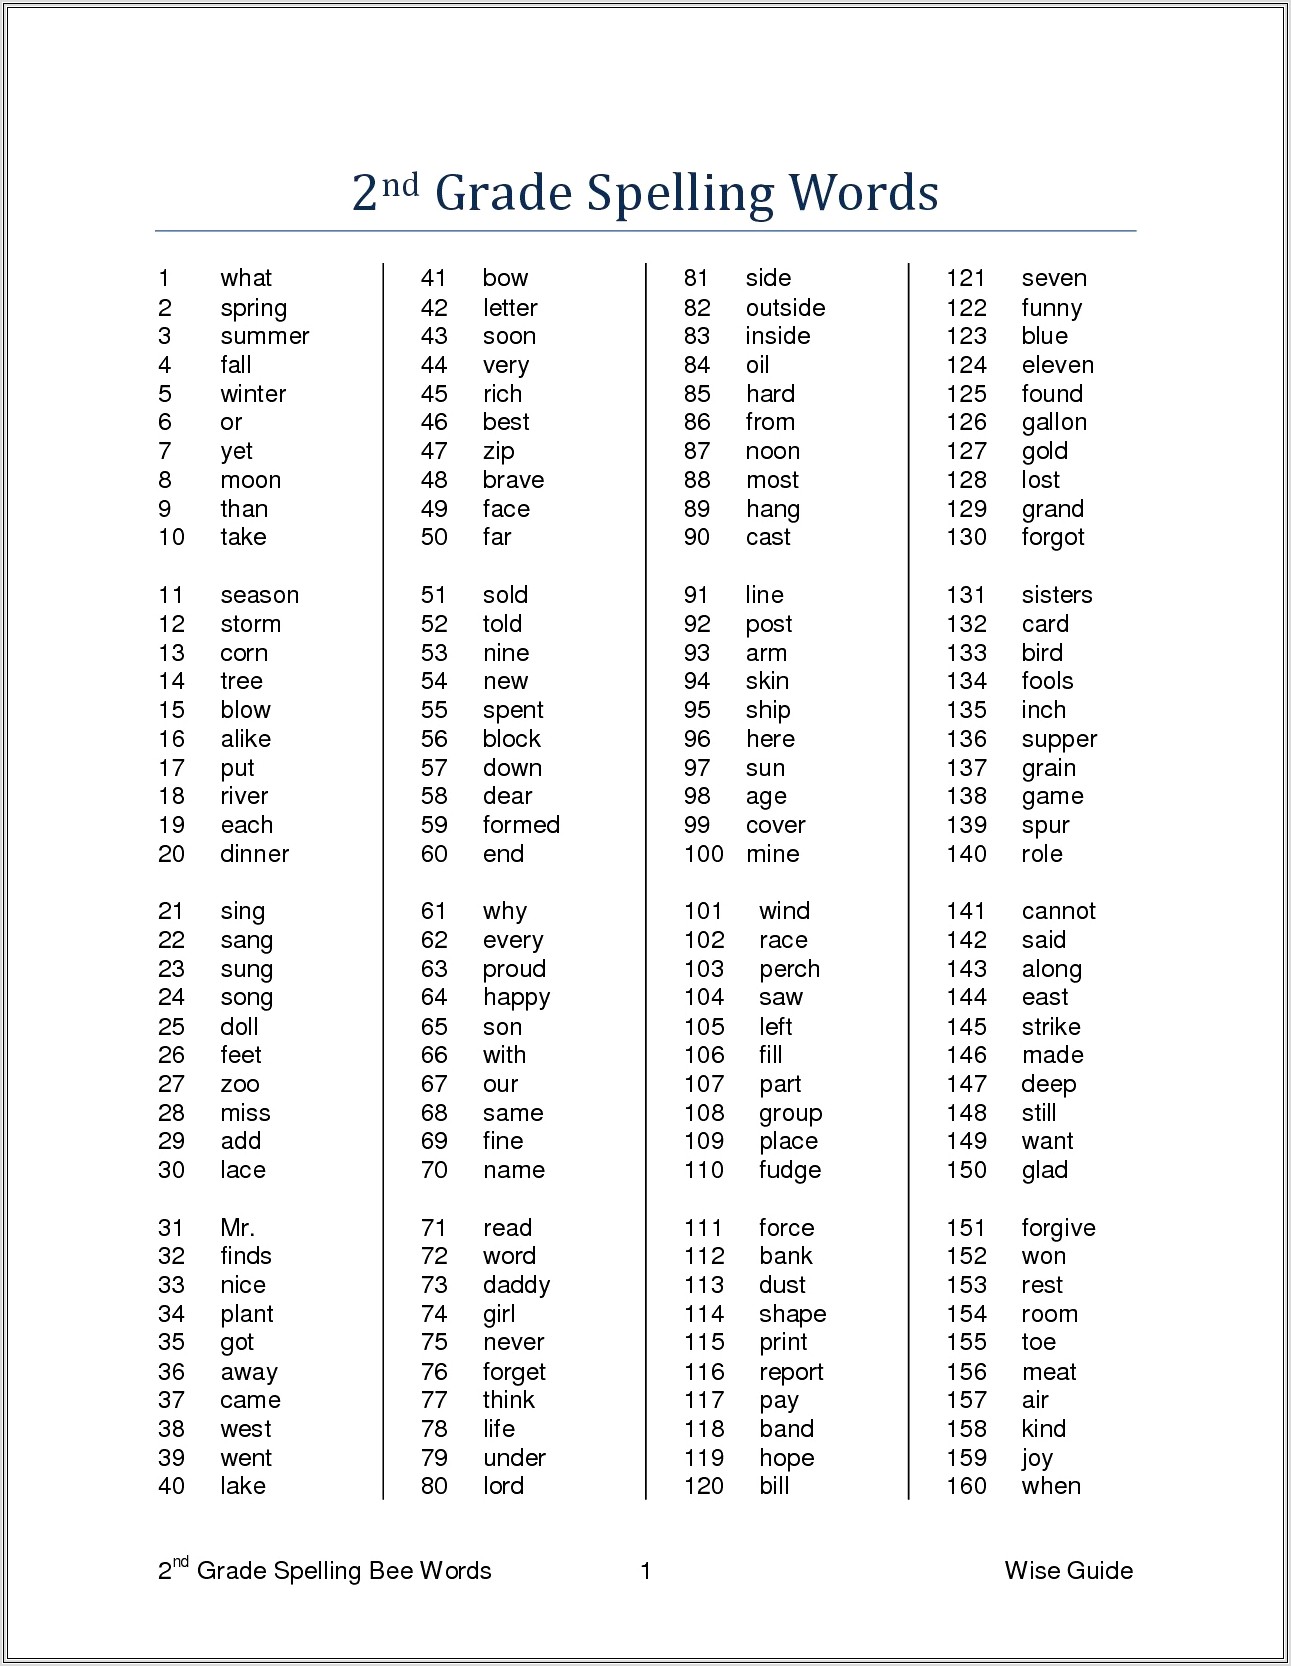 free-third-grade-spelling-words-worksheets-worksheet-restiumani